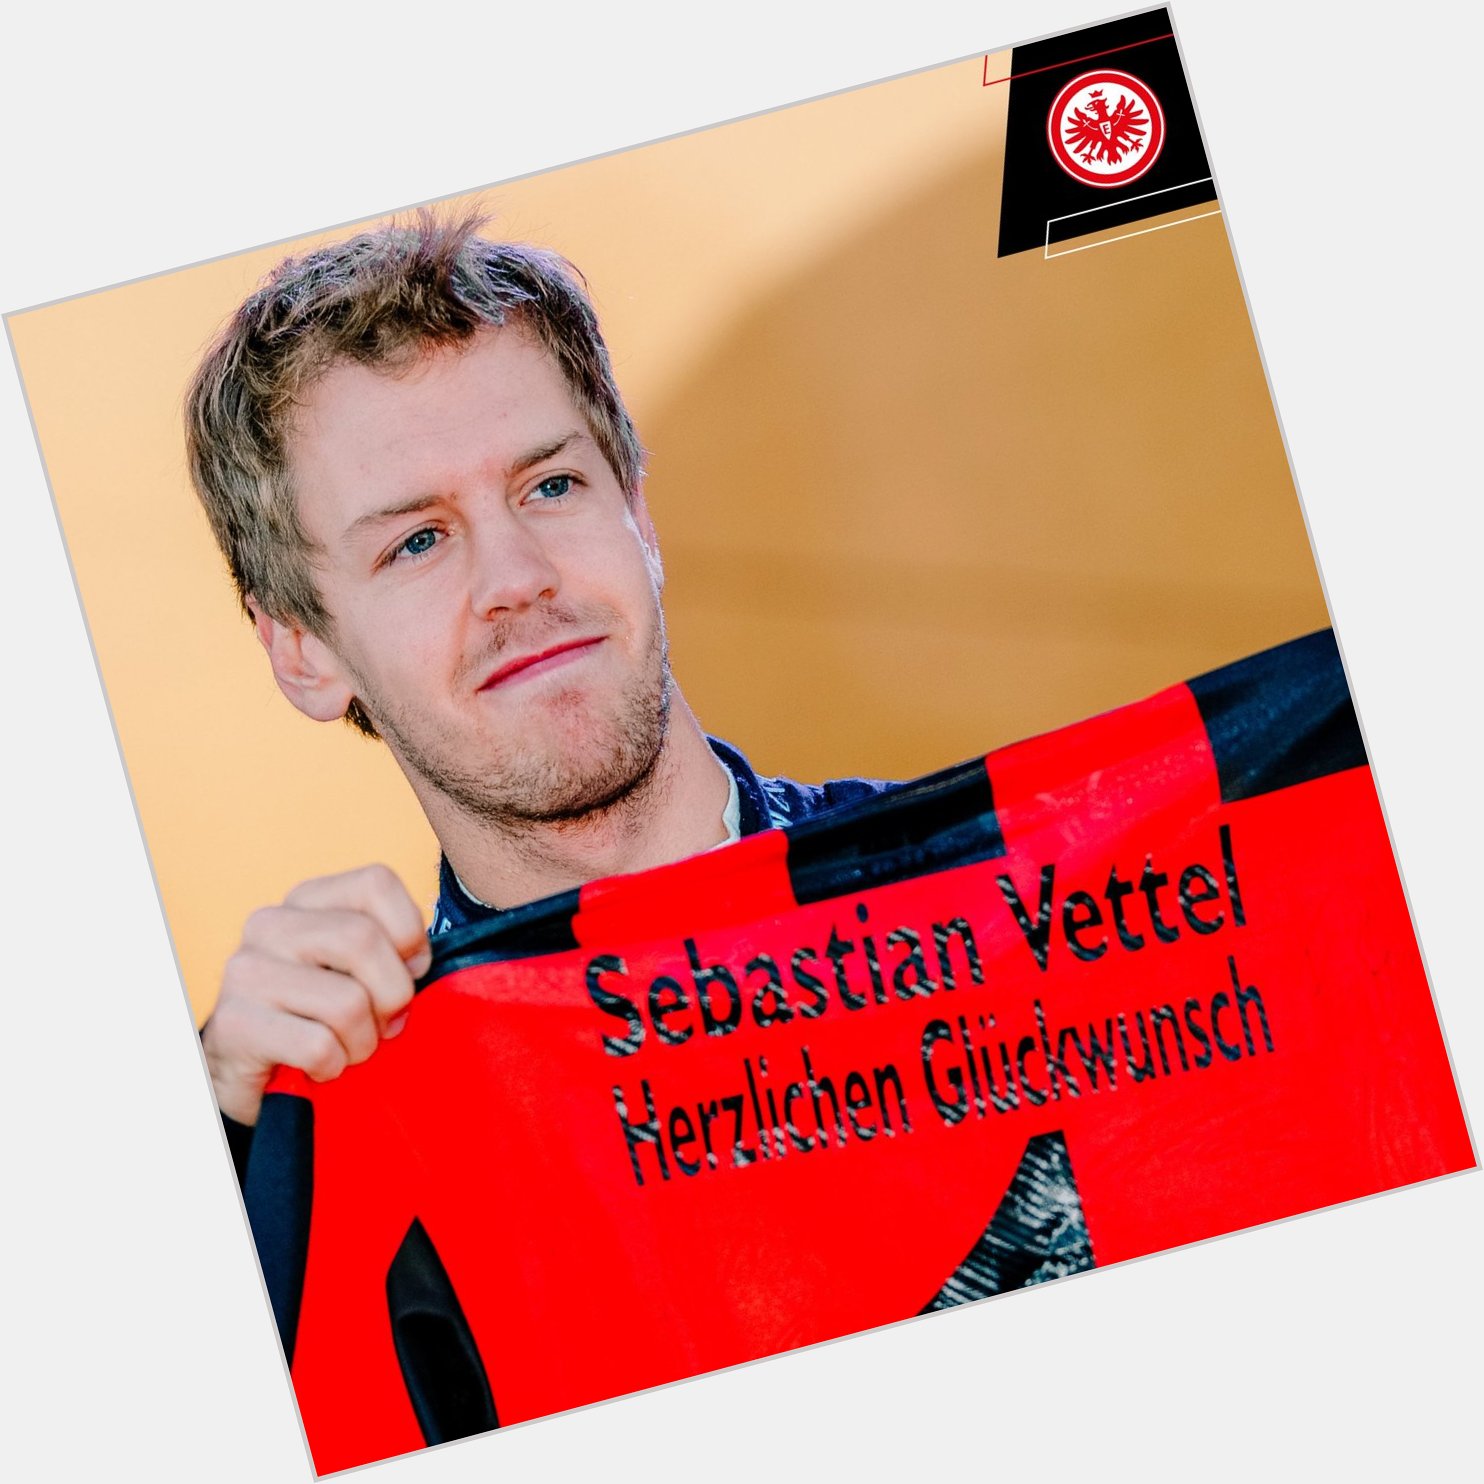 Happy birthday, Seb!  Our lifelong member Sebastian Vettel turns 3  5  today! 